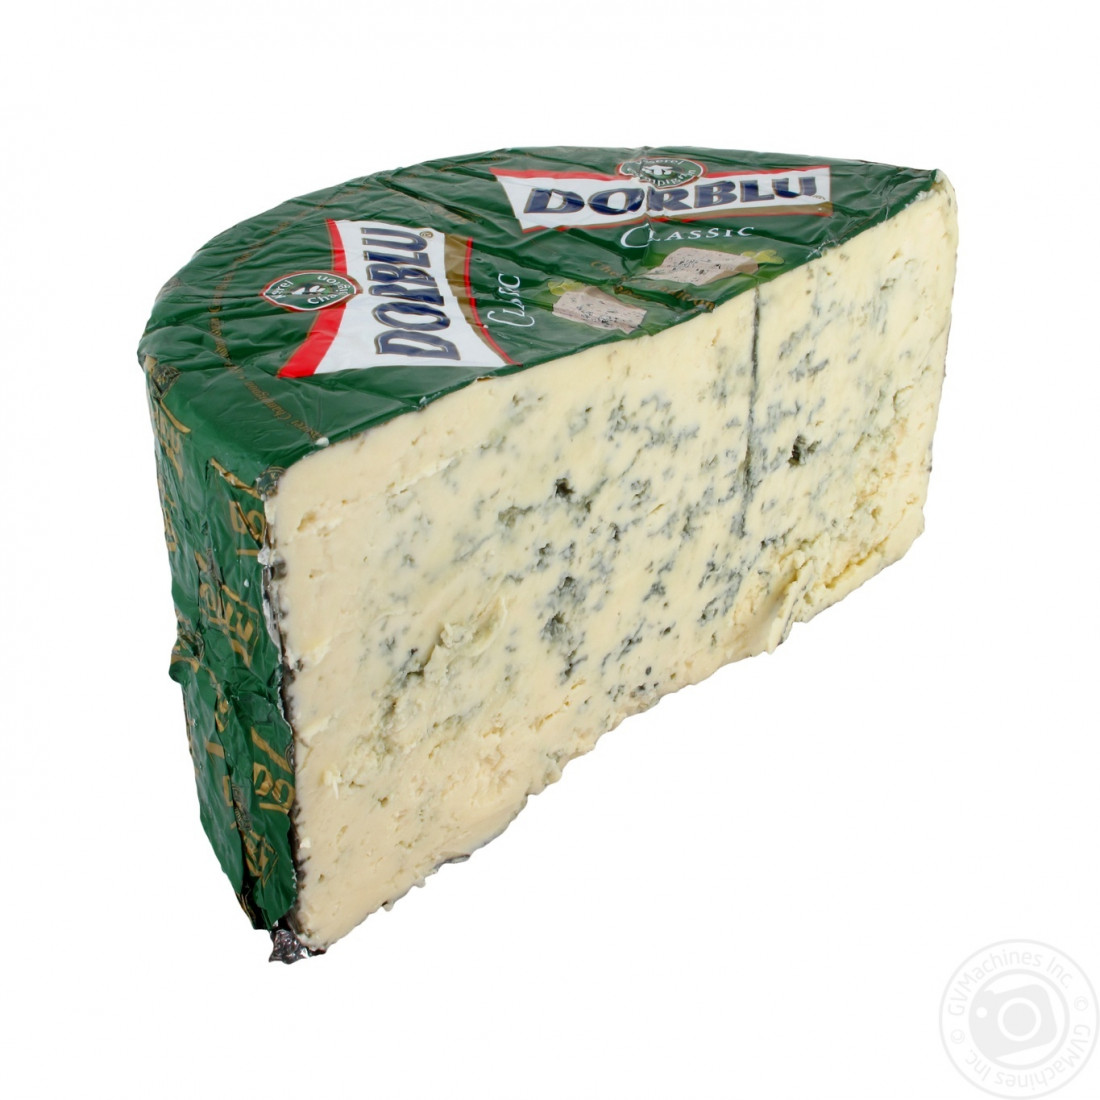 Дорблю это. Сыр дорблю с голубой плесенью 50% 100г. Сыр с плесенью дор Блю. Сыр дор Блю 100г с голубой плесенью 50%. Сыр дор Блю 100г.